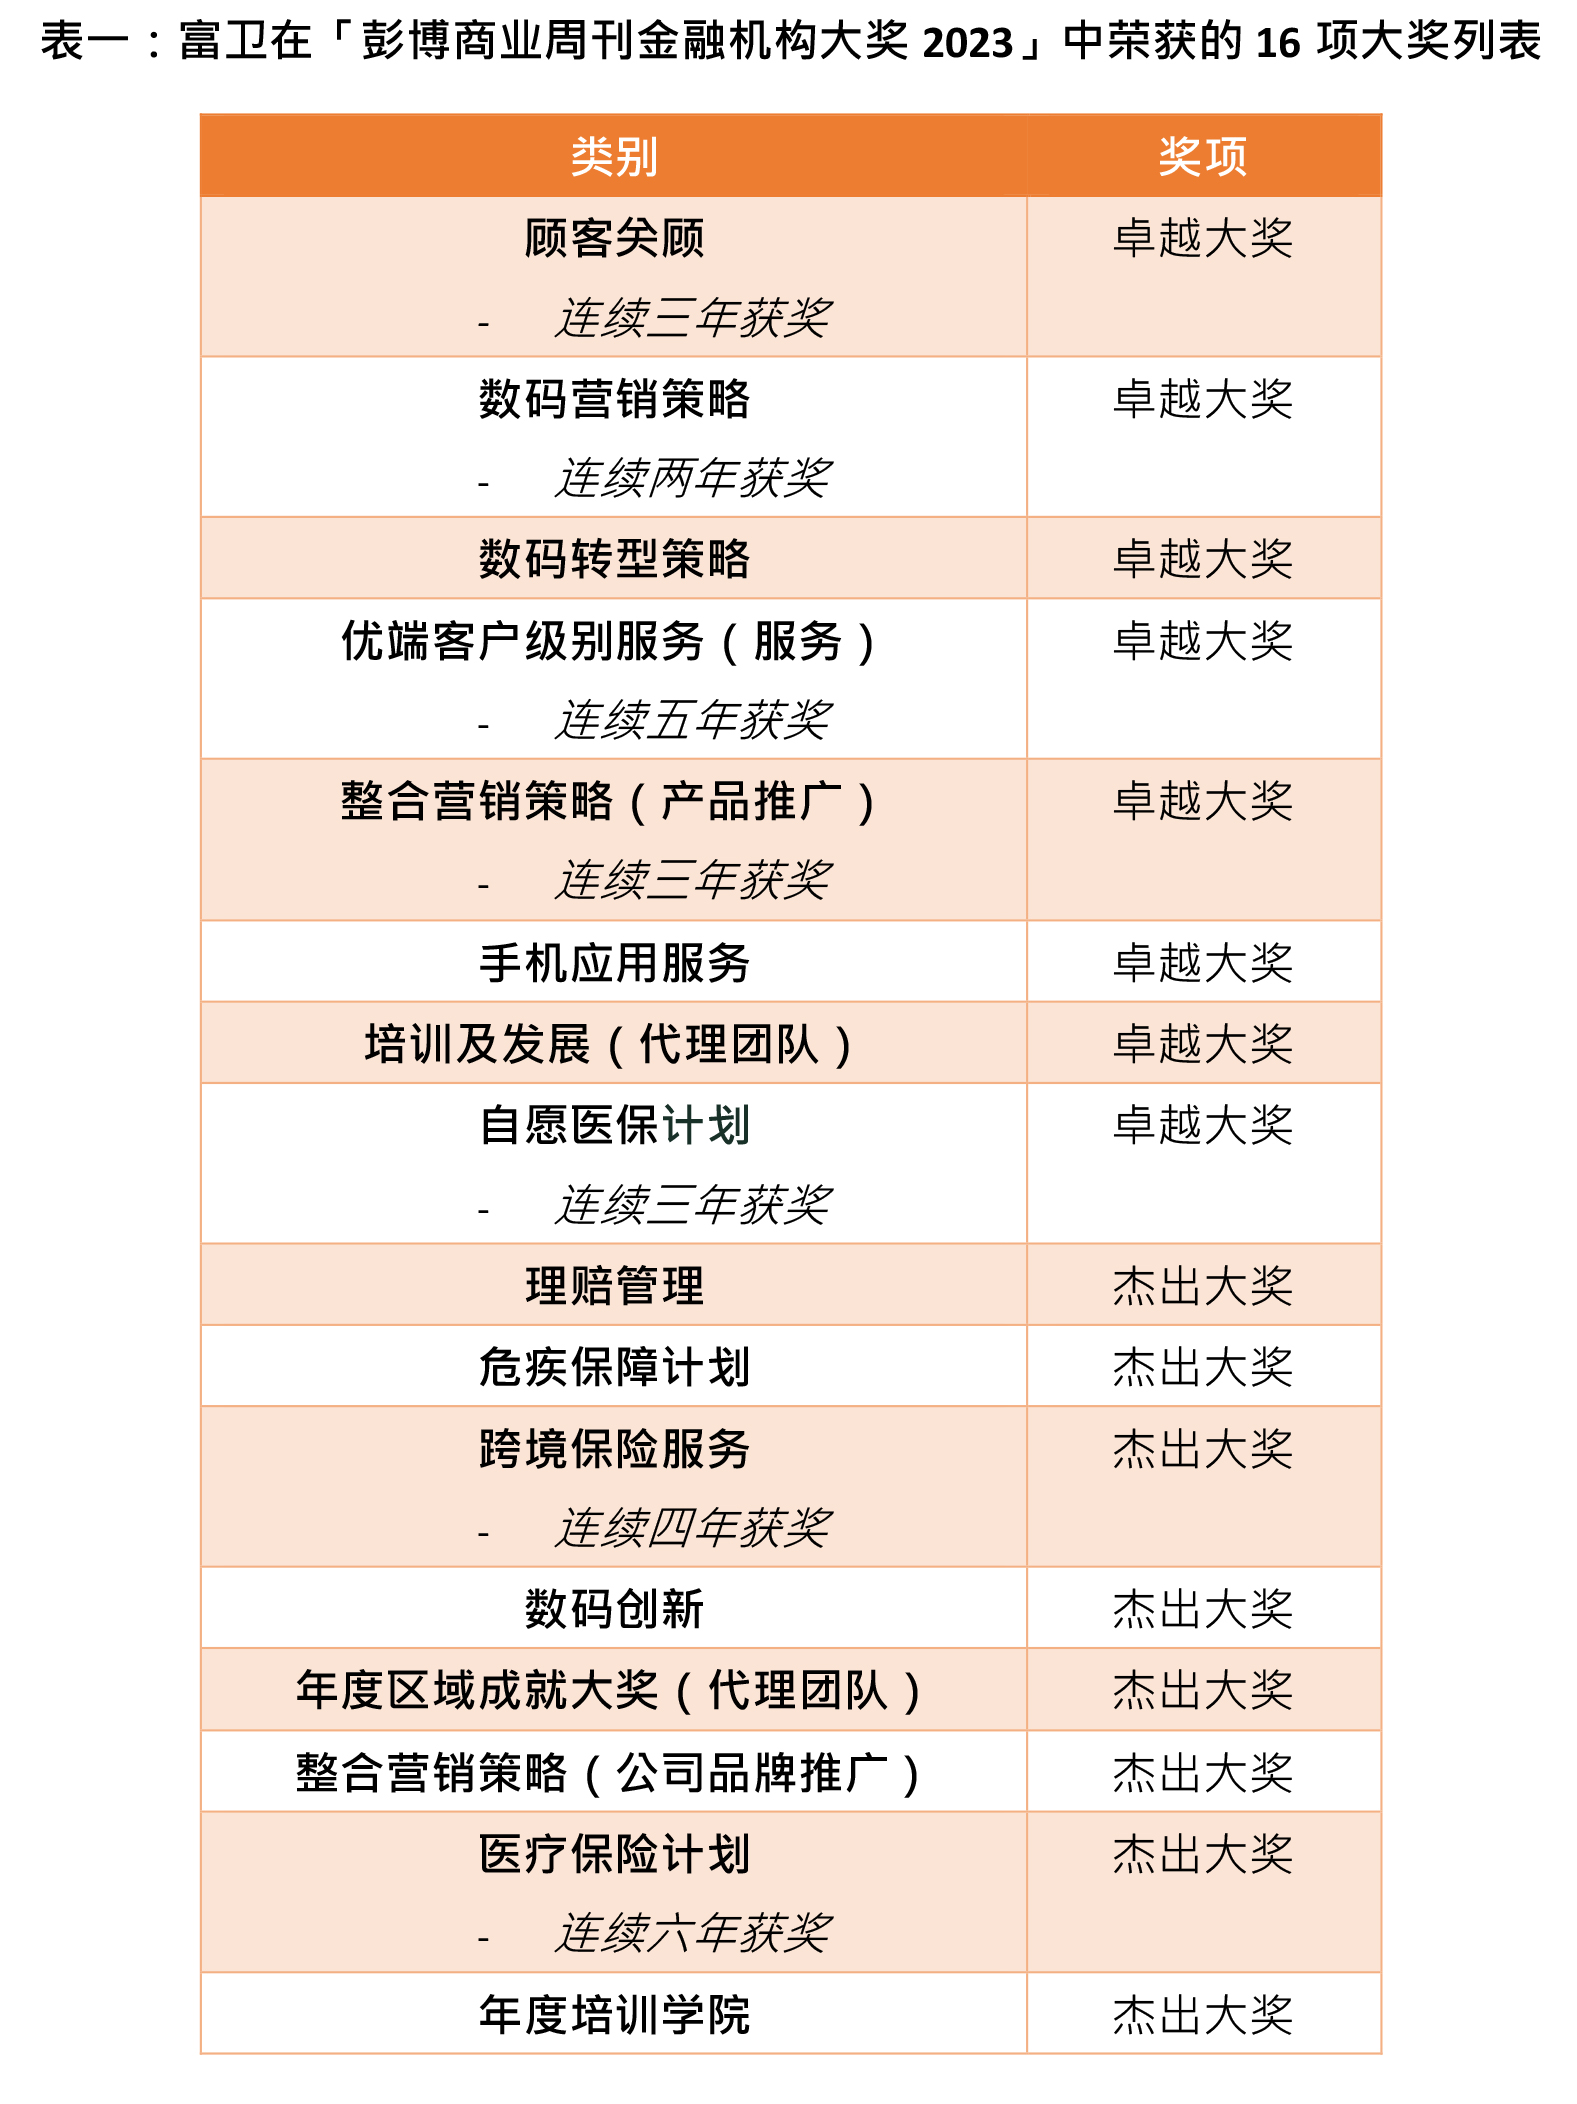 富卫香港横扫“彭博商业周刊金融机构大奖2023”16项殊荣